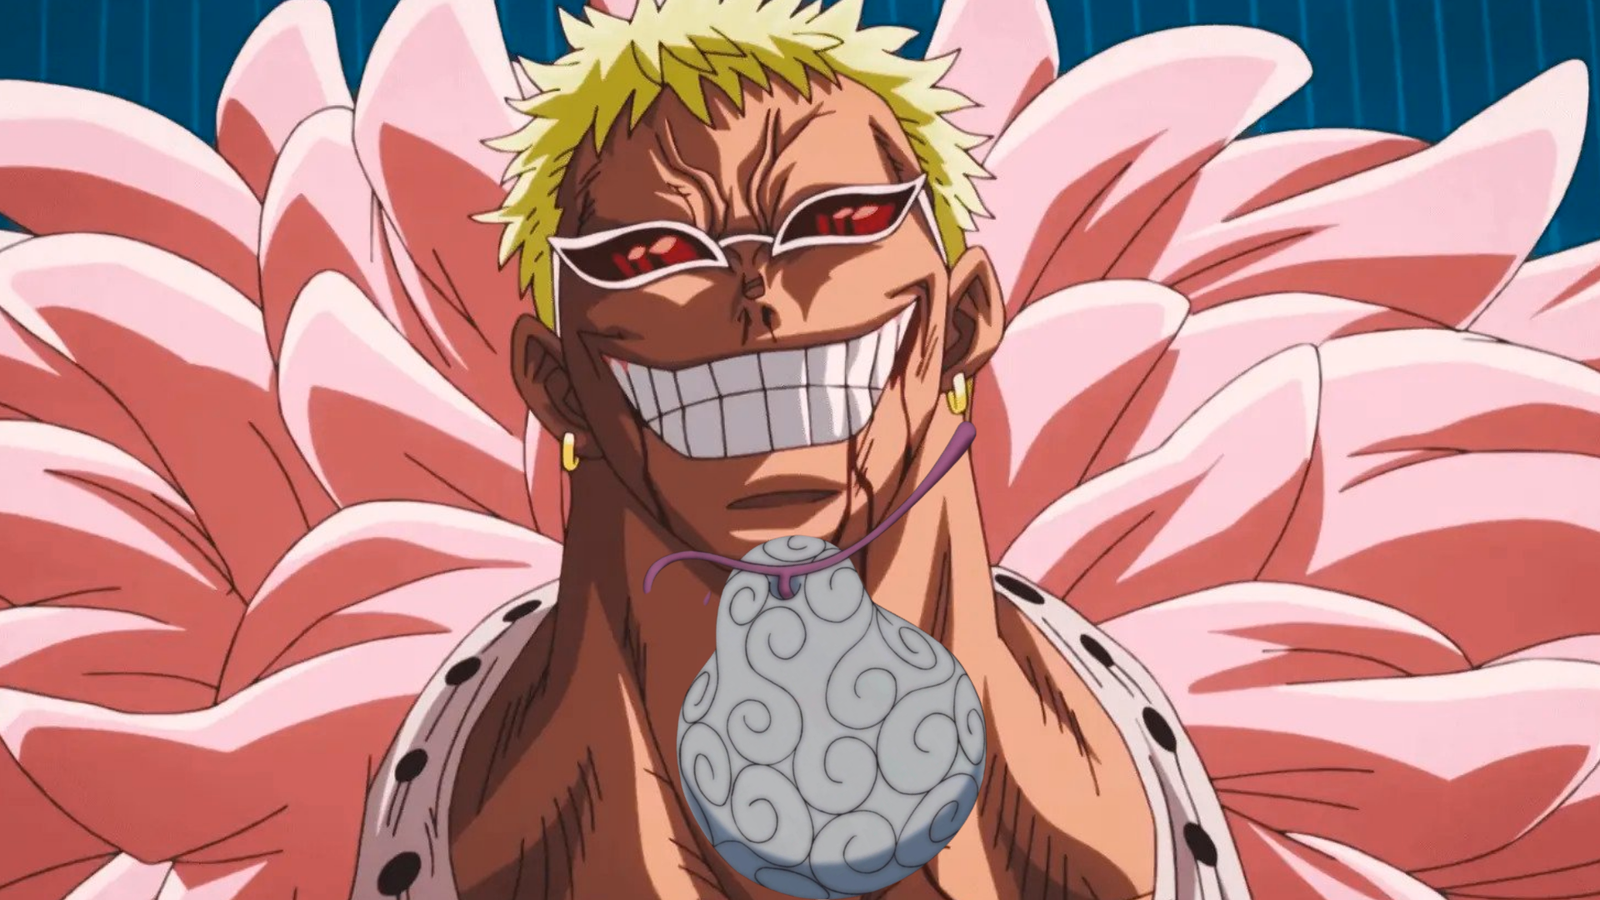 Ito Ito no Mi Devil Fruit in One Piece